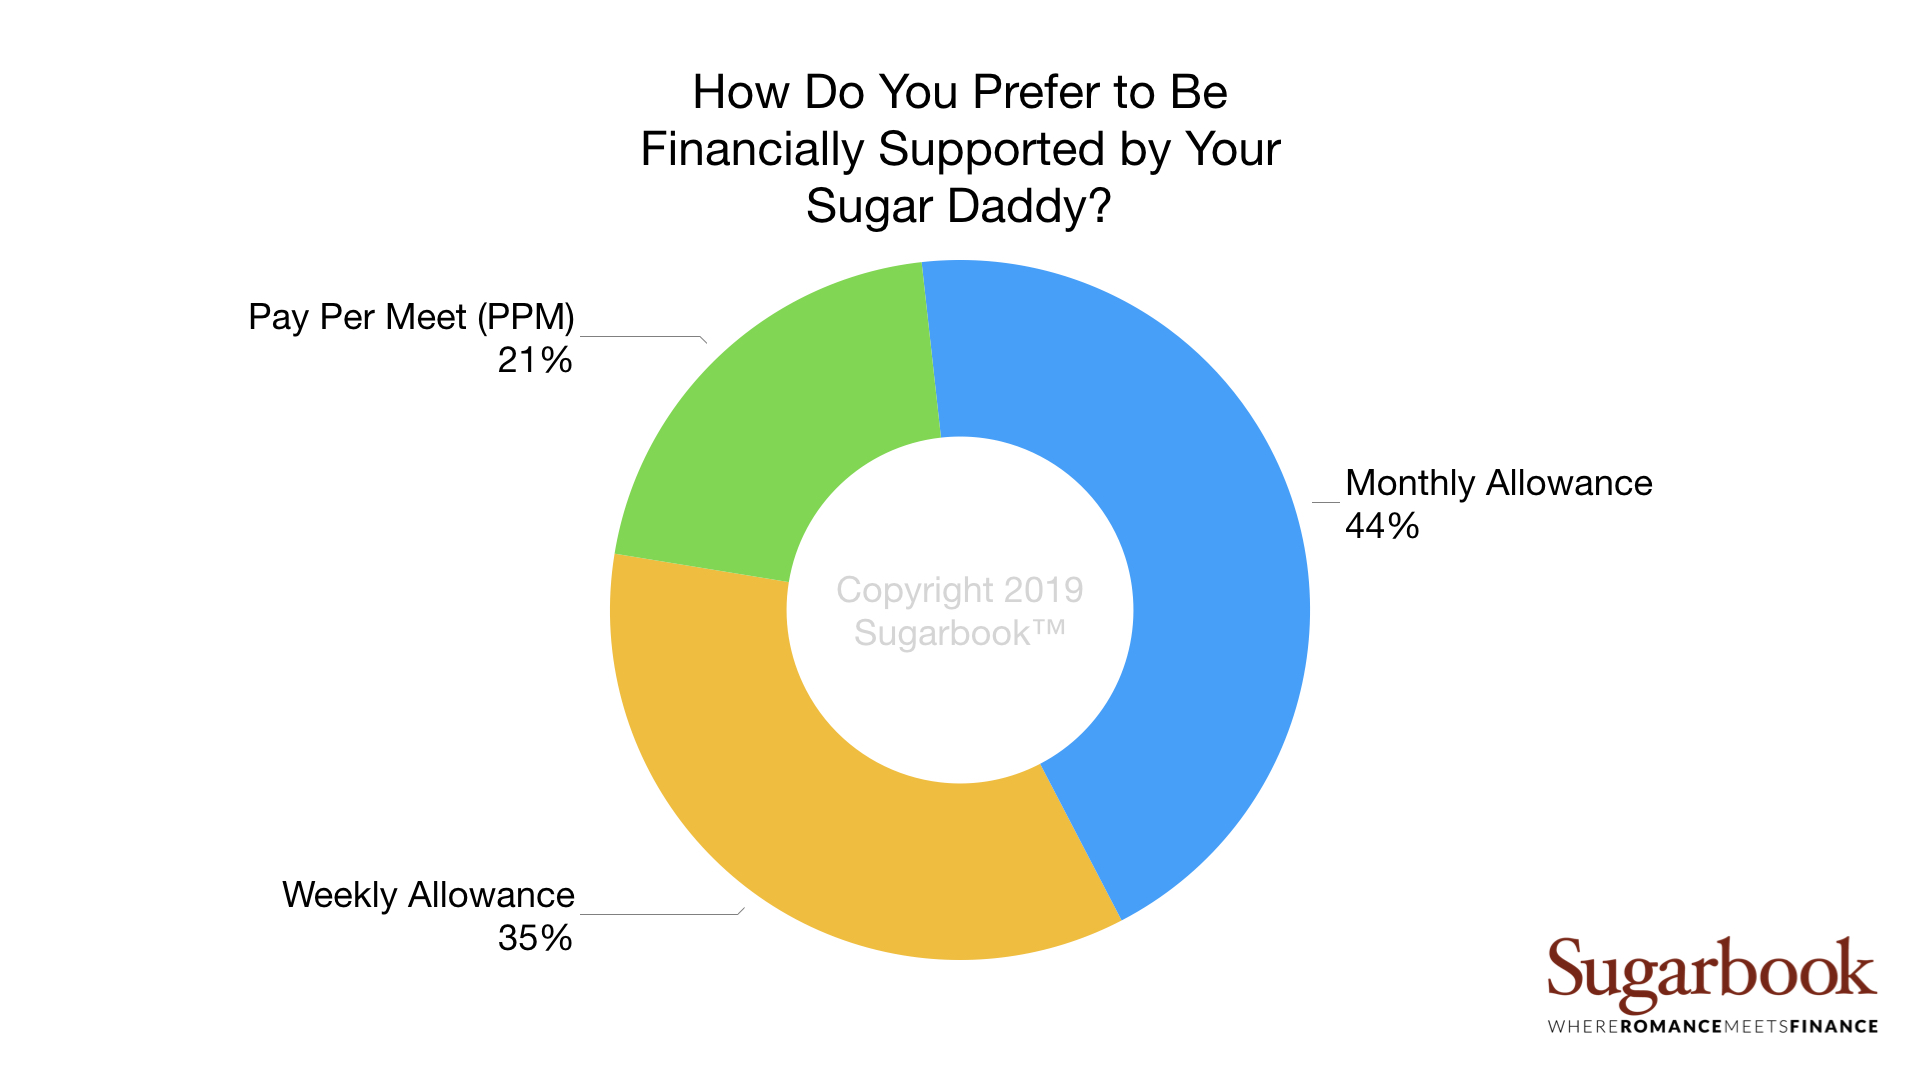 Sugar Baby Survey by Sugarbook